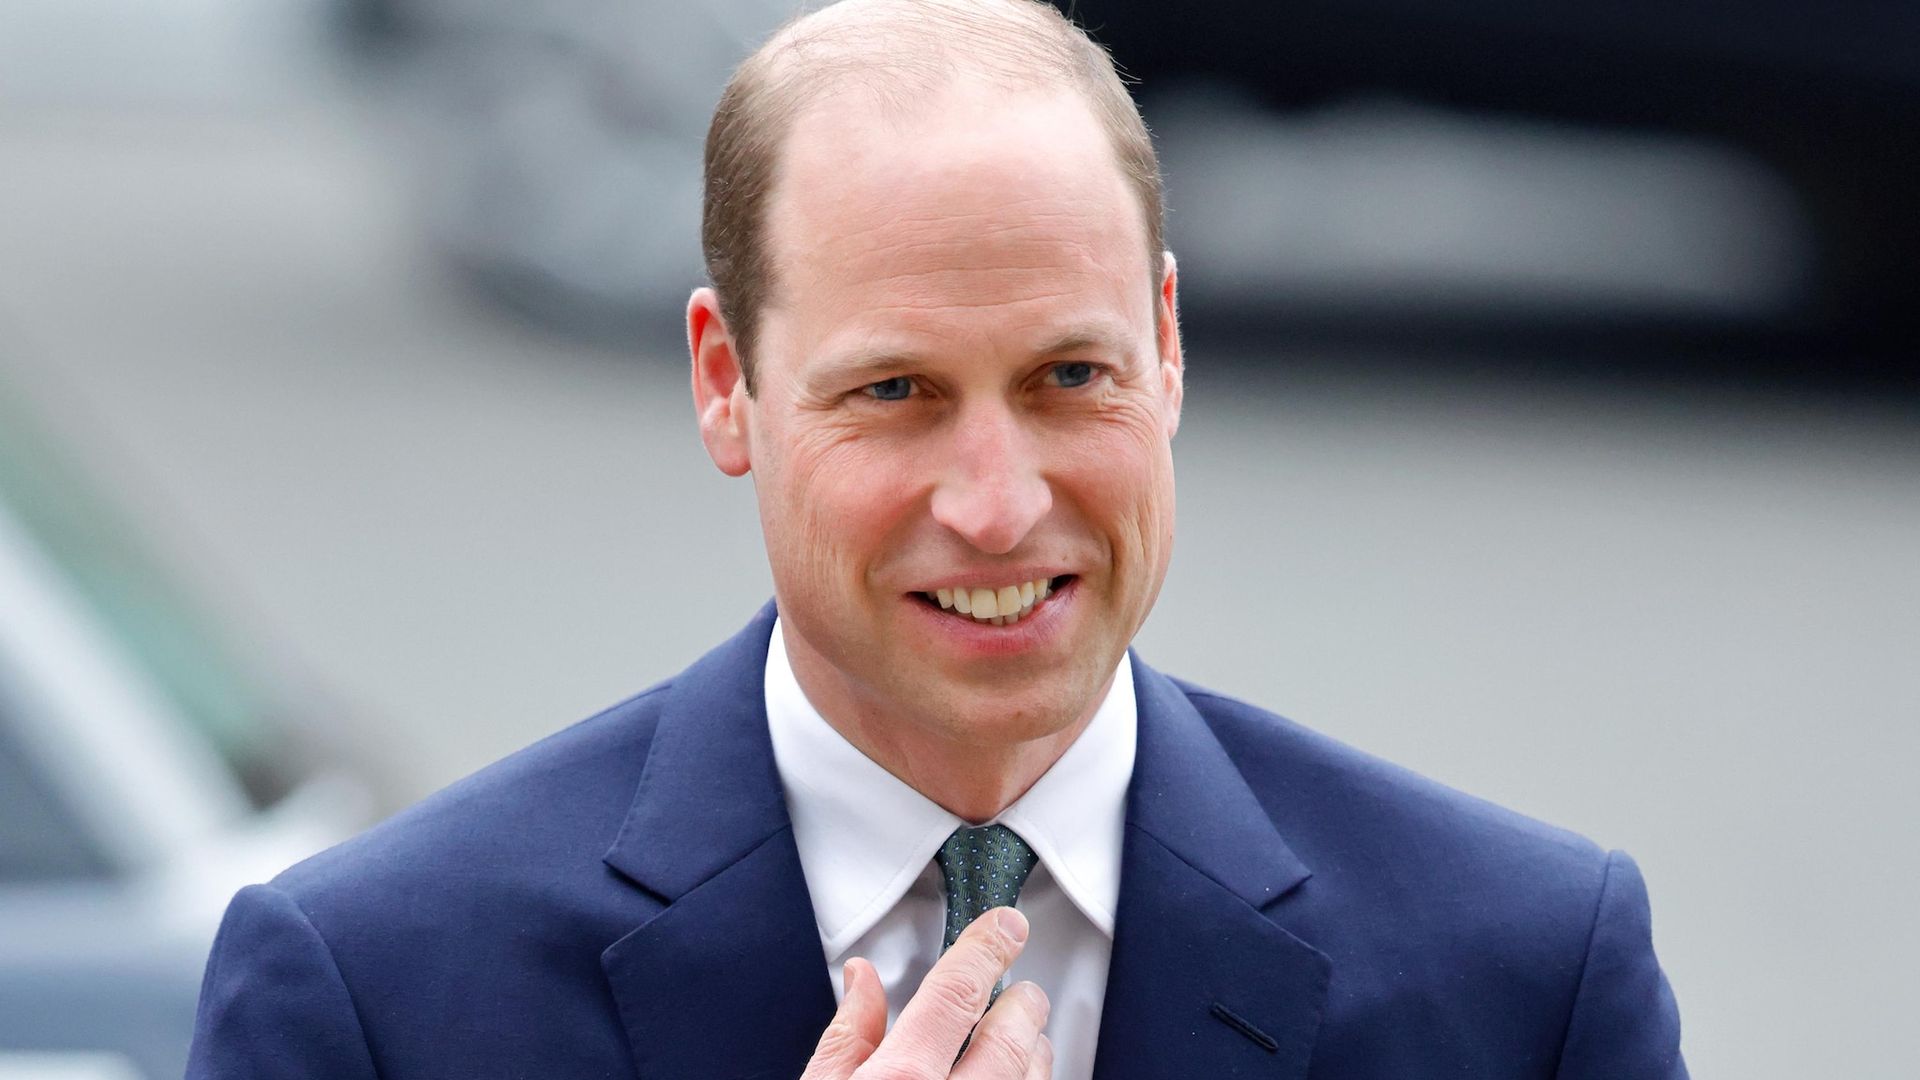 Tras un mes alejado de todo junto a su familia, el príncipe William anuncia su regreso a sus deberes reales